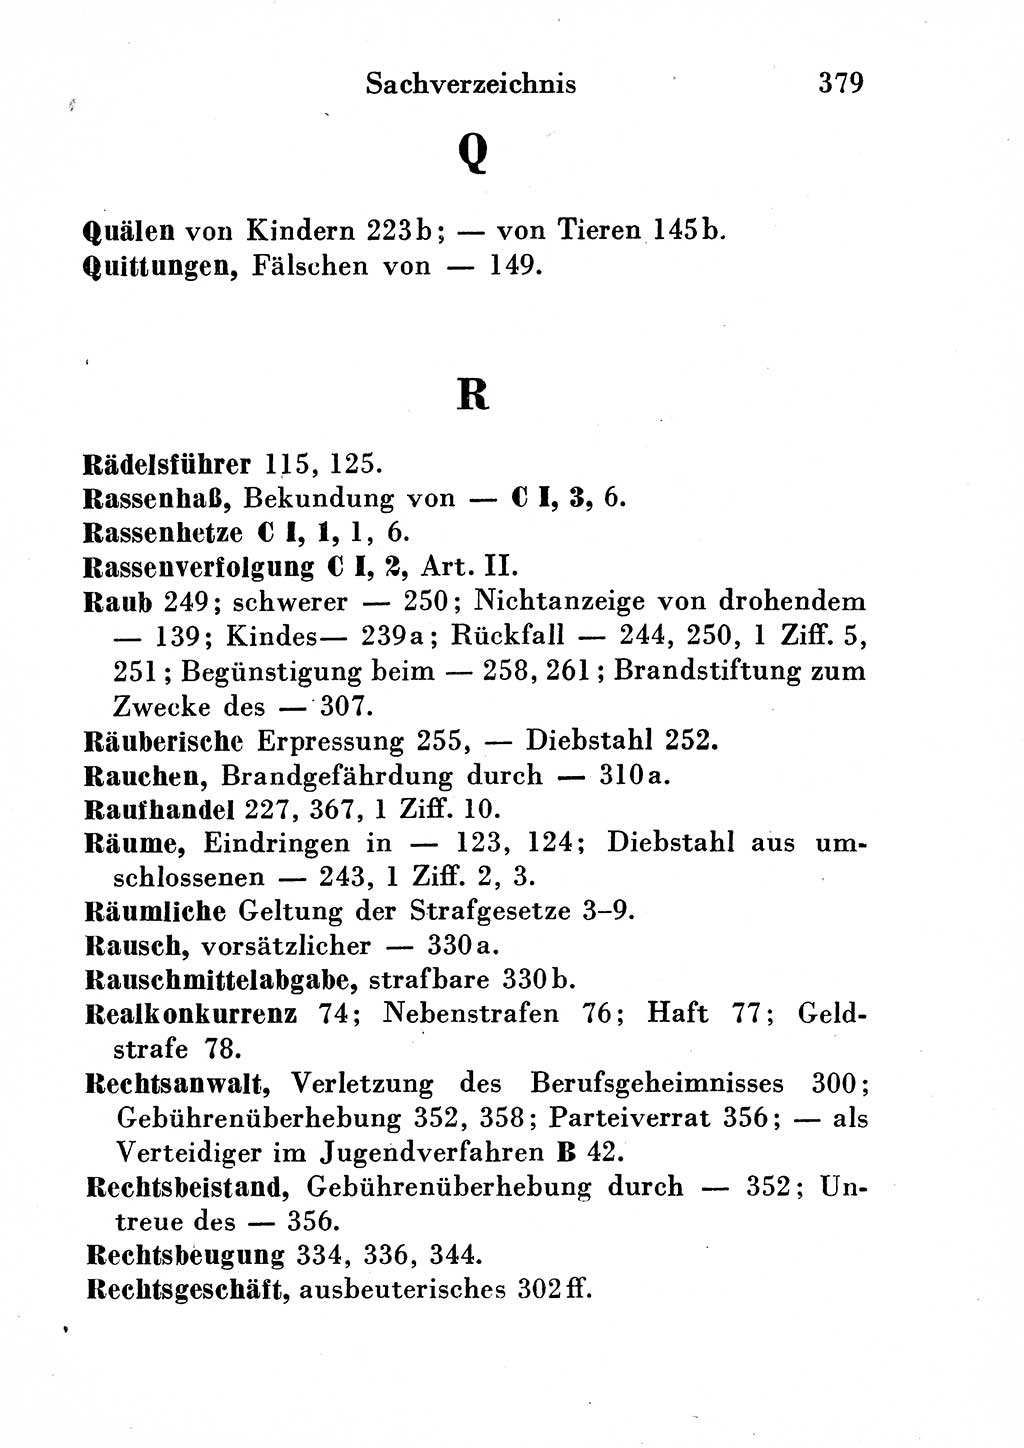 Strafgesetzbuch (StGB) und andere Strafgesetze [Deutsche Demokratische Republik (DDR)] 1954, Seite 379 (StGB Strafges. DDR 1954, S. 379)